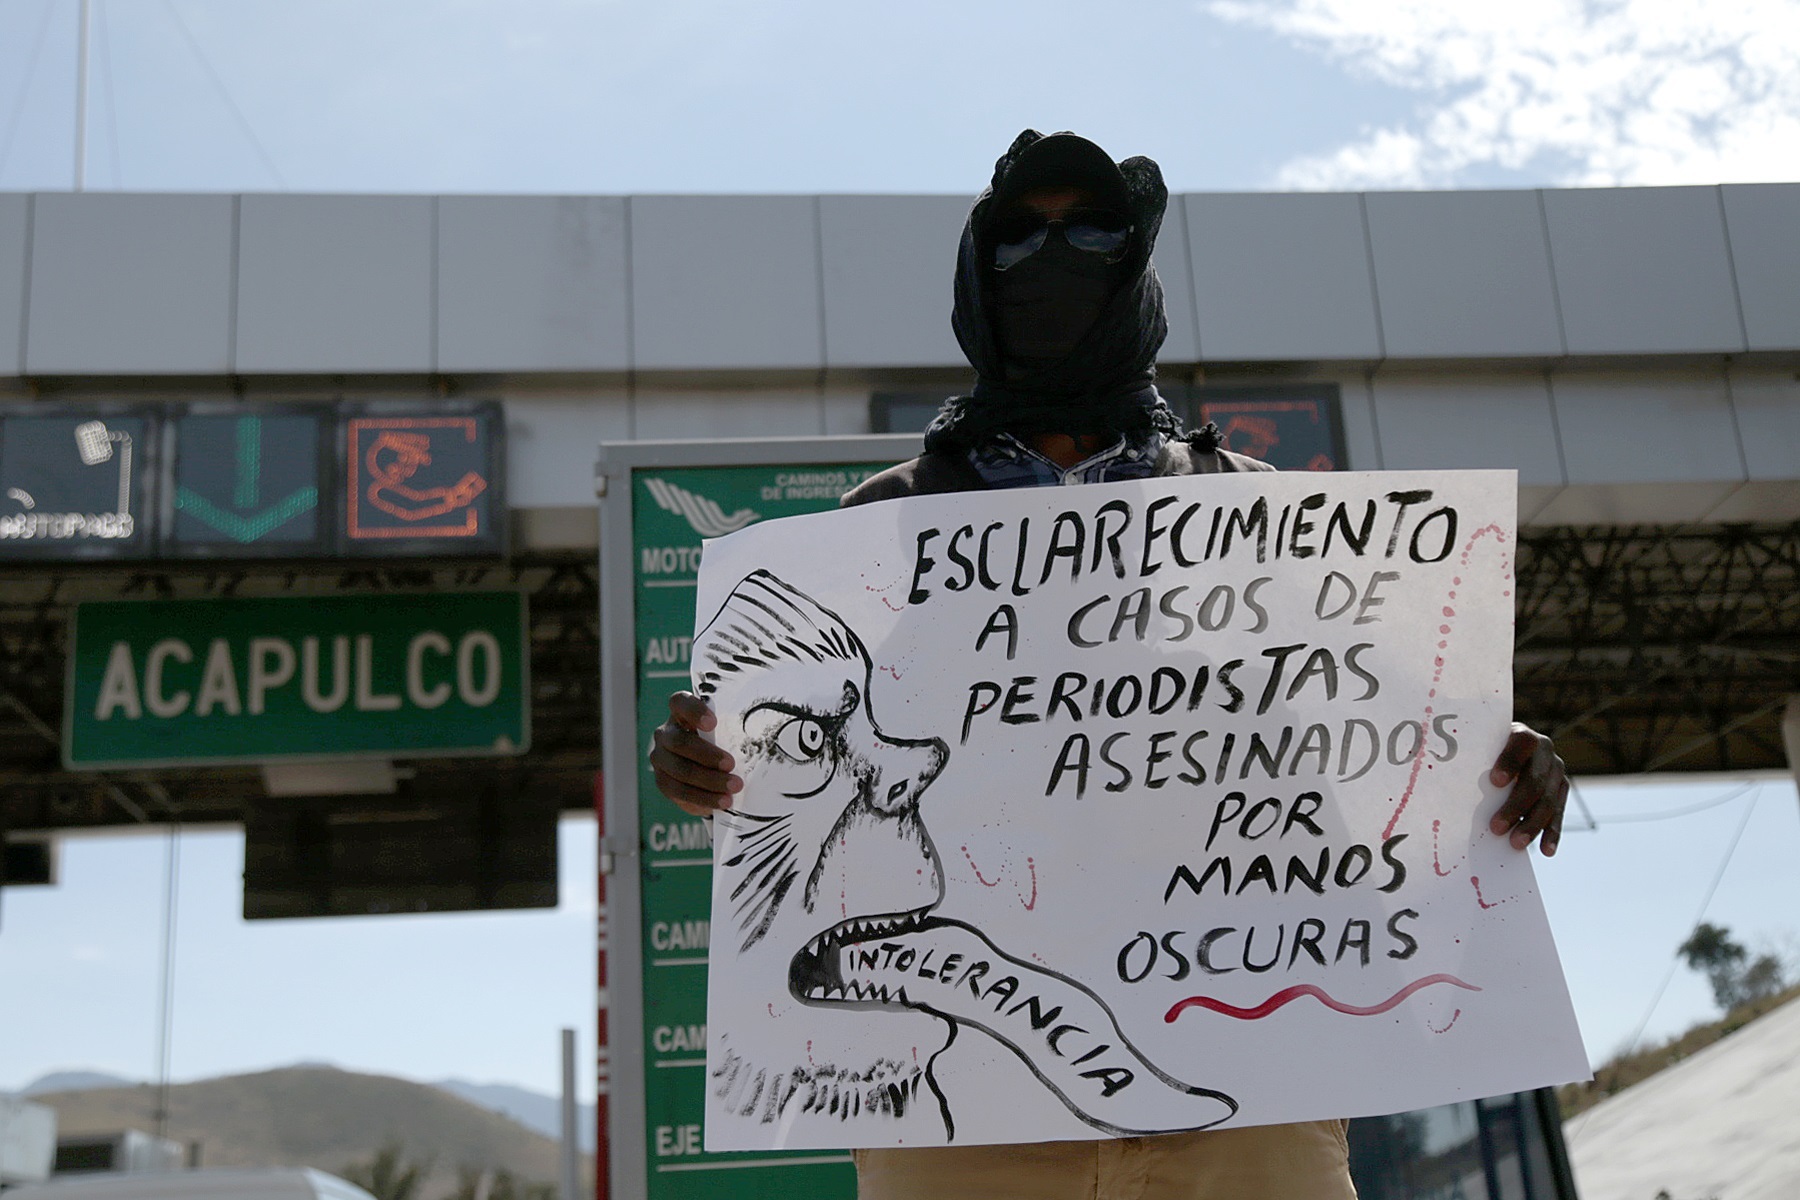  En la fronteriza Tijuana, considerada como una de las ciudades más violentas de México, los periodistas son callados a balazos con dos asesinatos en una semana y una larga historia de crímenes contra la prensa. (Foto: EFE)
